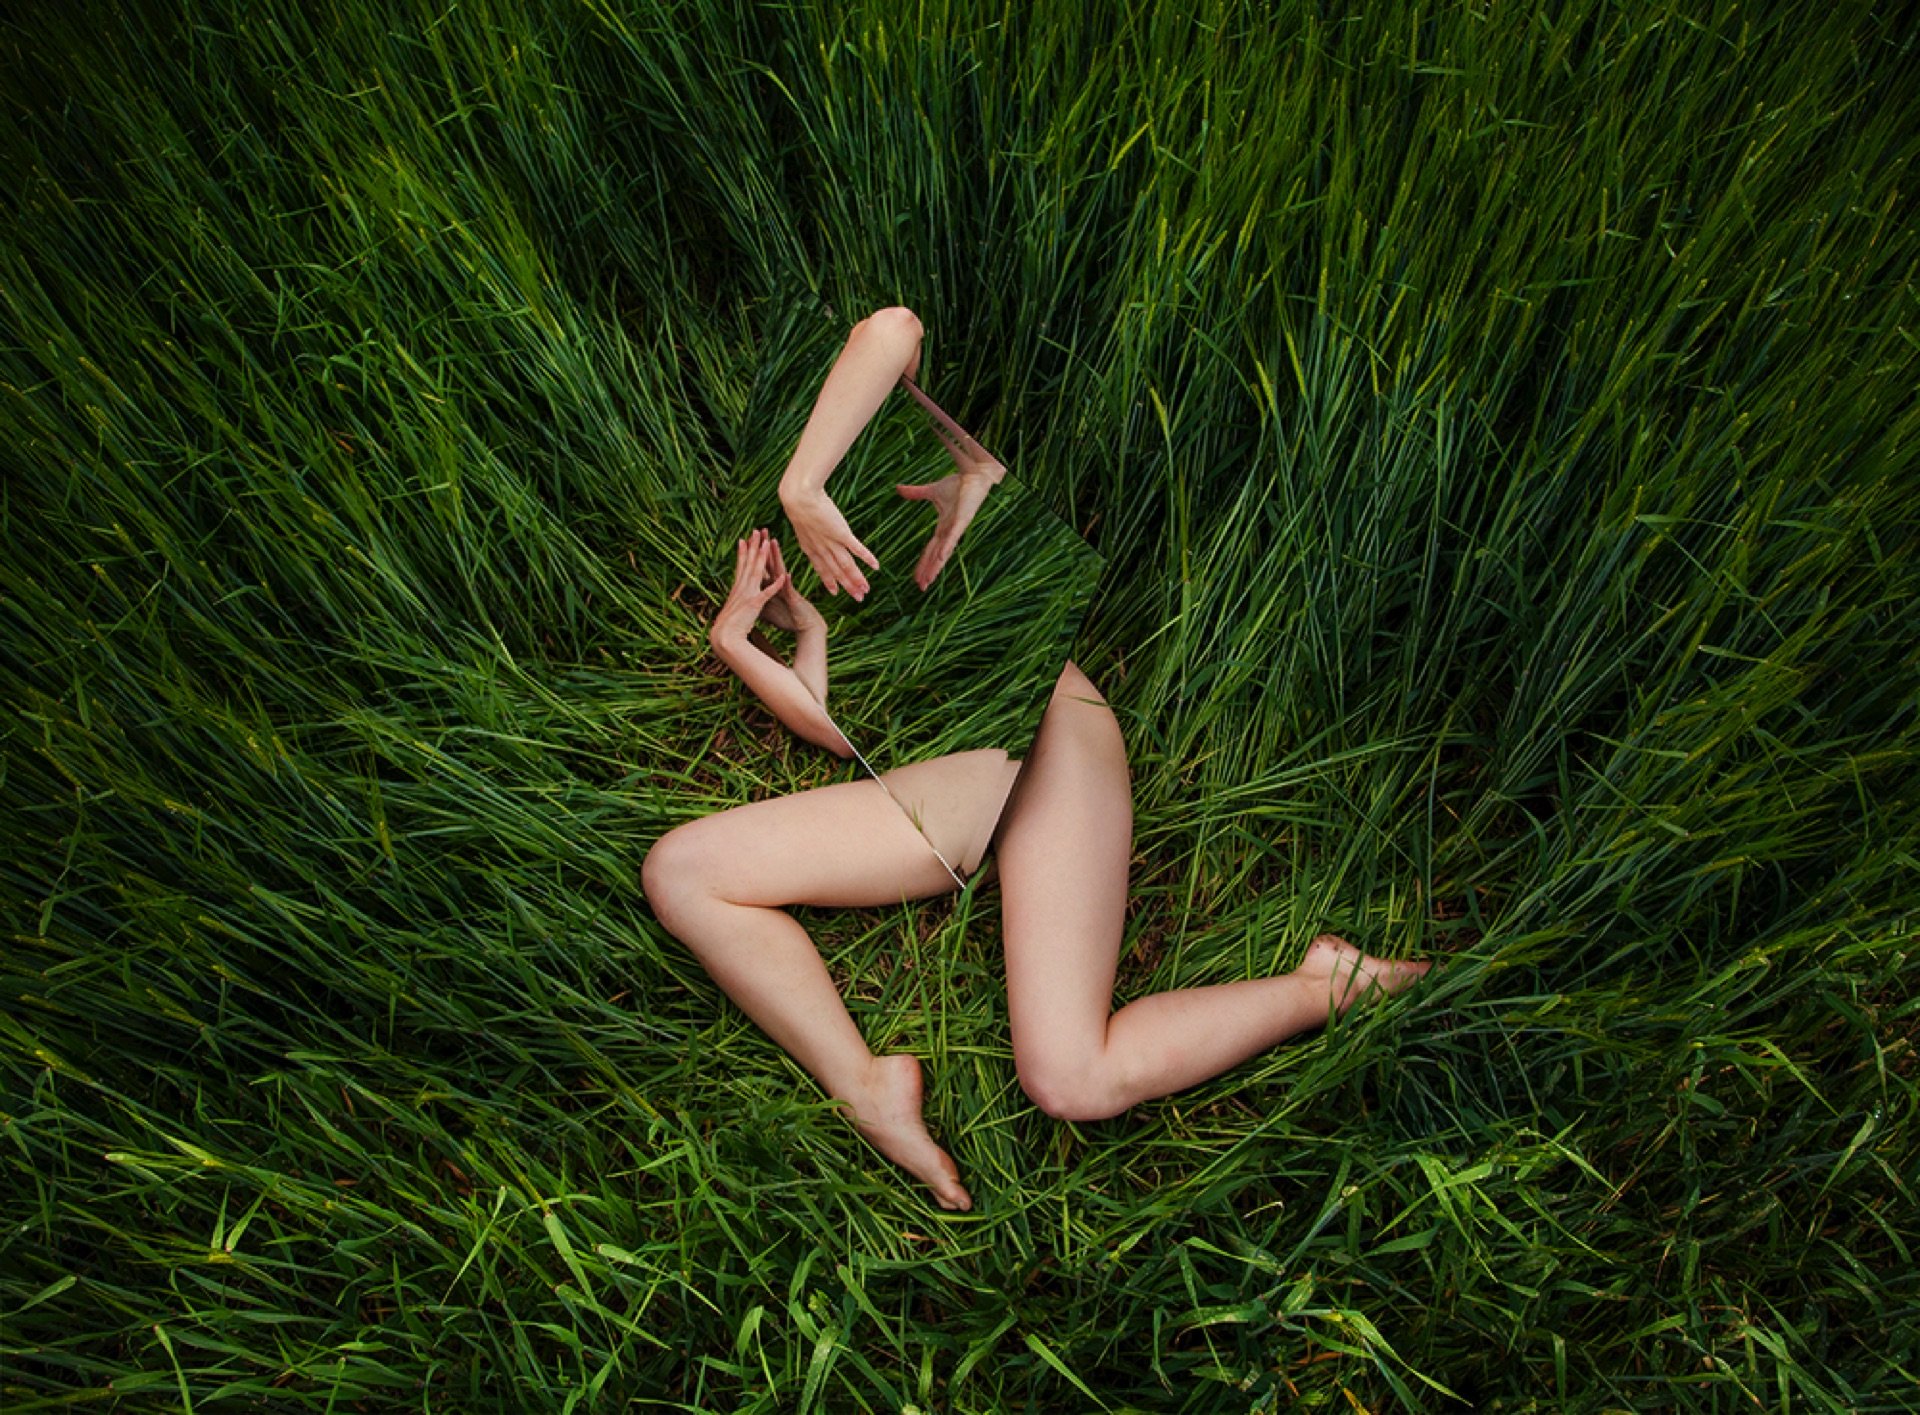 Loreal Prystaj fotografa l’essere umano come elemento della natura | Collater.al